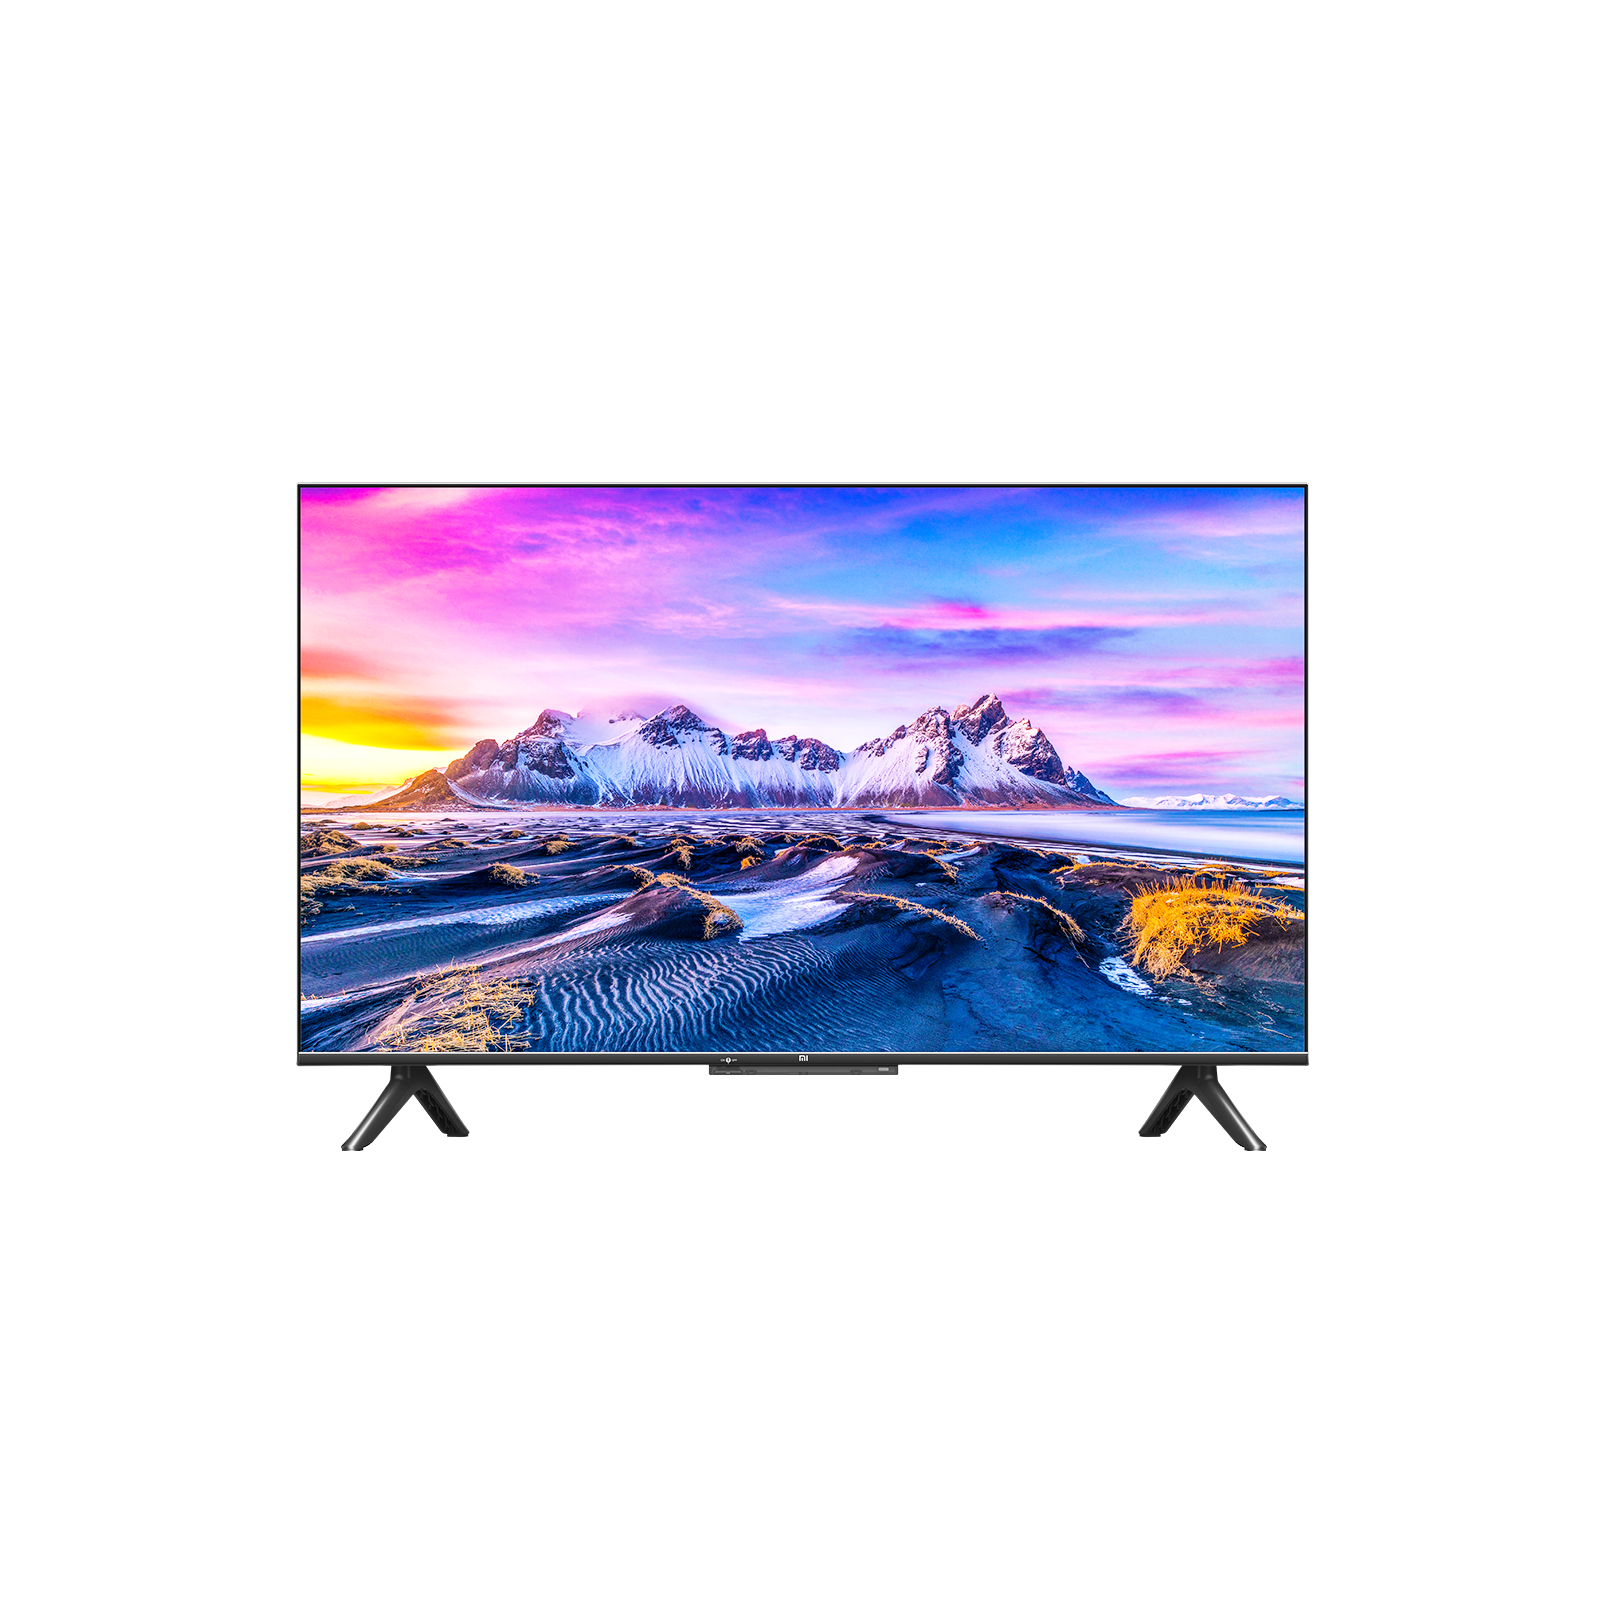 Comprar Xiaomi Mi TV P1 - 32 Pulgadas - HD - Televisión Reacondicionado  Oficial